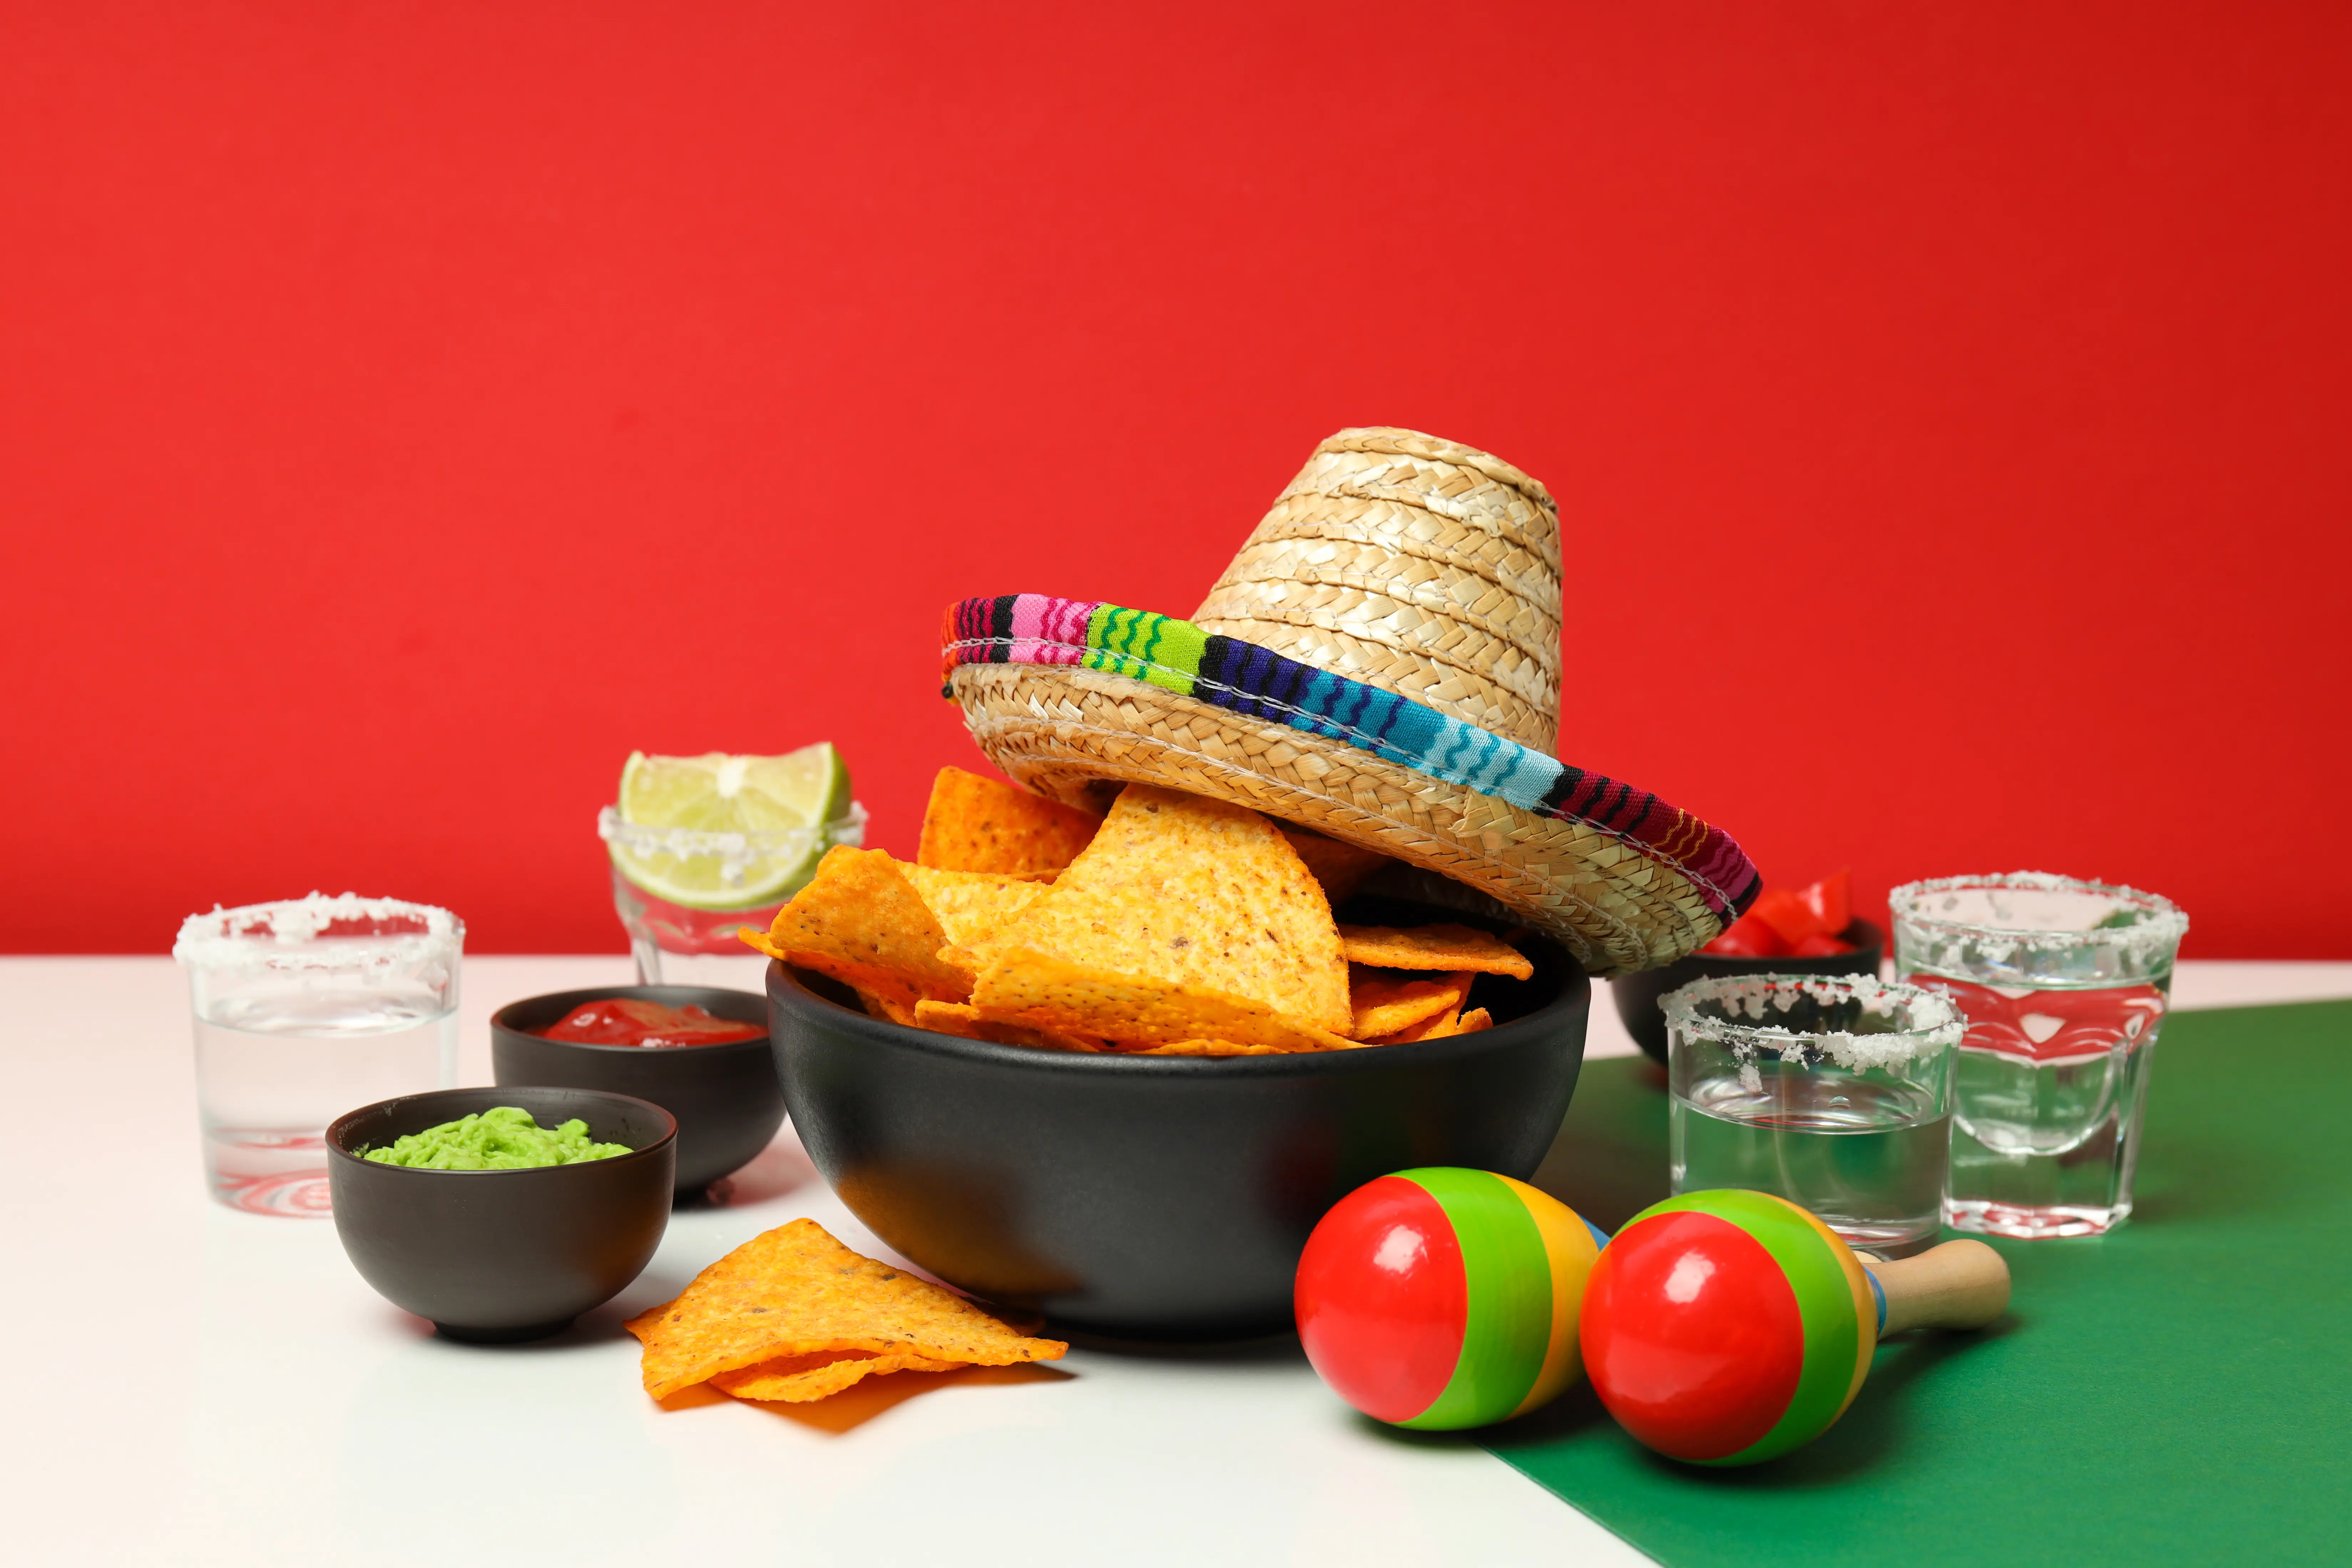 El chile, una milenaria tradición alimenticia mexicana 